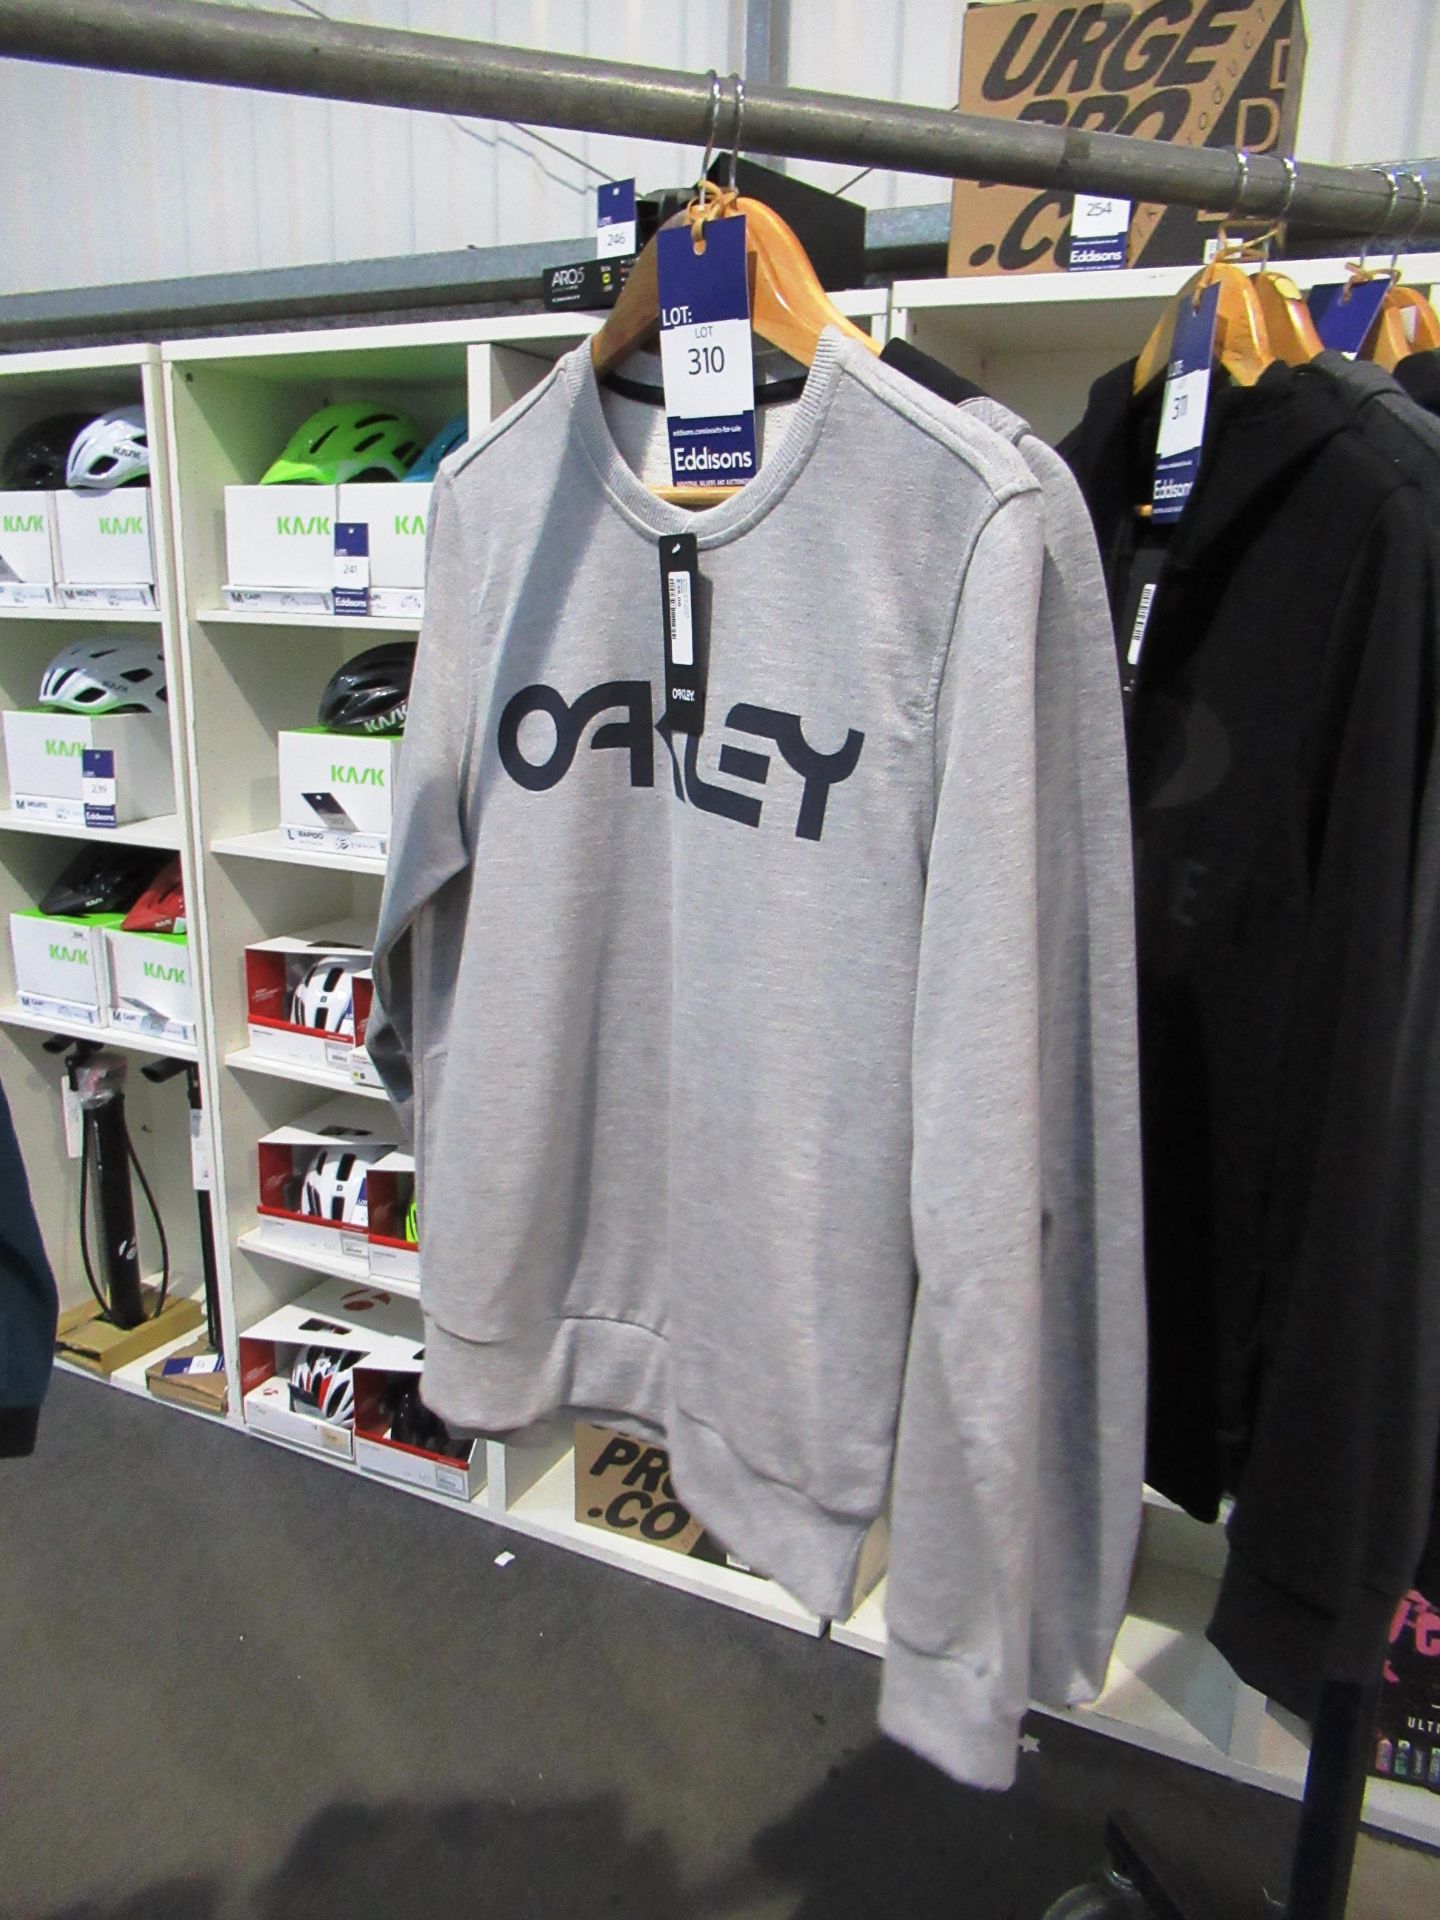 1 x Oakley 'Heather' Sweatshirt and 1 x Madison Ro